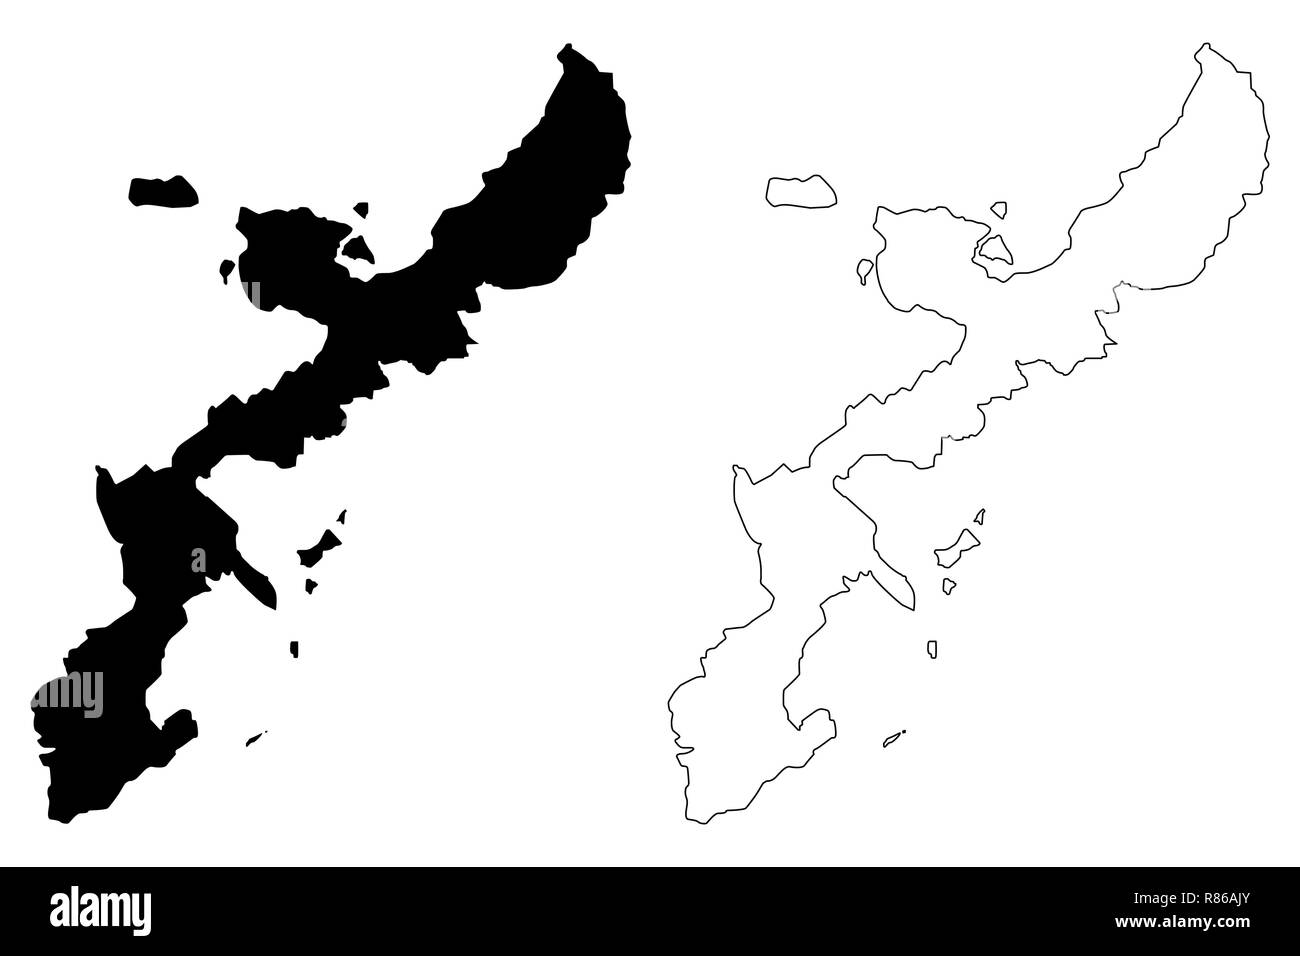 L'île d'Okinawa (île du Japon) map vector illustration, scribble sketch carte Okinawa Illustration de Vecteur